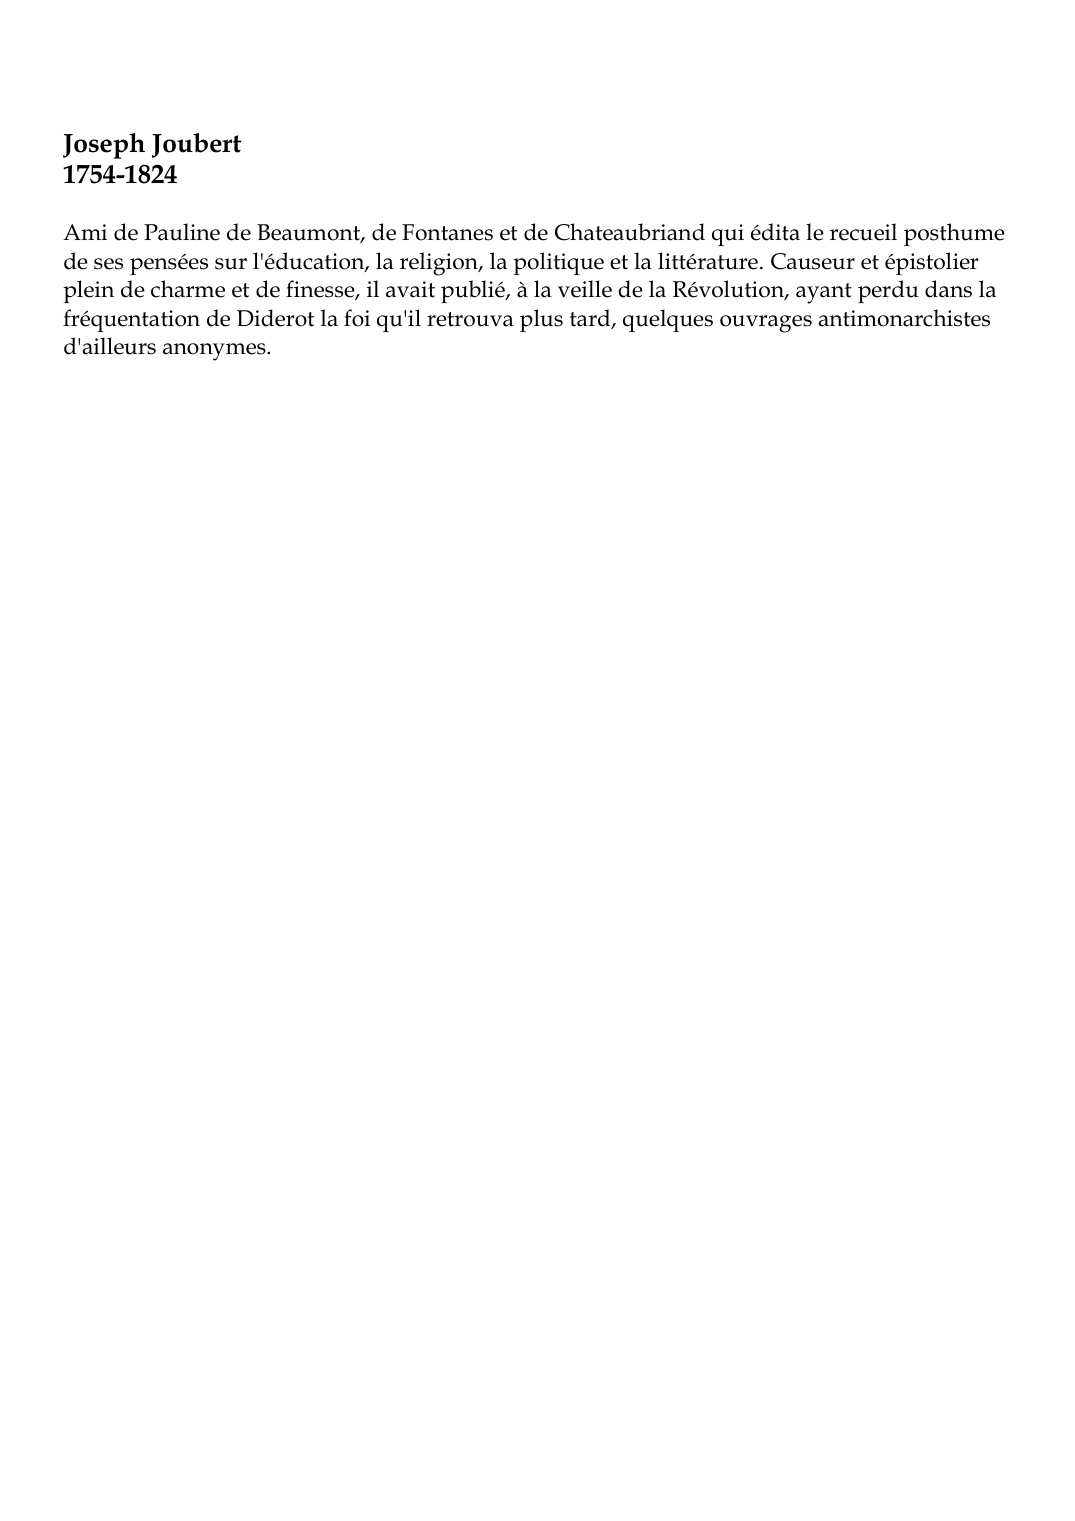 Prévisualisation du document Joseph Joubert1754-1824Ami de Pauline de Beaumont, de Fontanes et de Chateaubriand qui édita le recueil posthumede ses pensées sur l'éducation, la religion, la politique et la littérature.